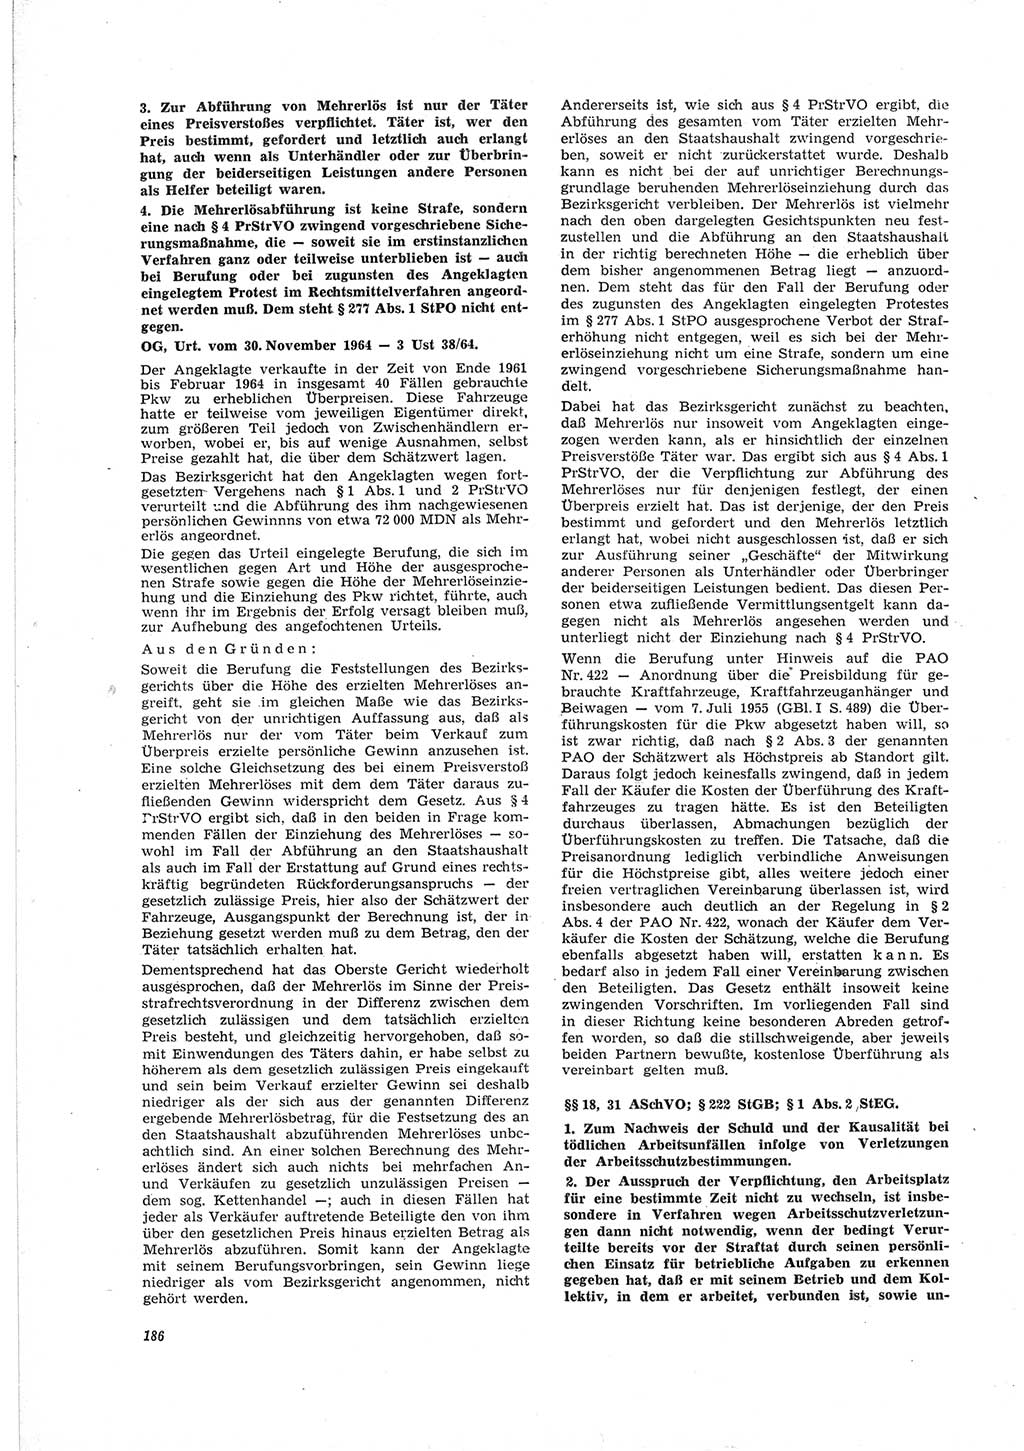 Neue Justiz (NJ), Zeitschrift für Recht und Rechtswissenschaft [Deutsche Demokratische Republik (DDR)], 19. Jahrgang 1965, Seite 186 (NJ DDR 1965, S. 186)